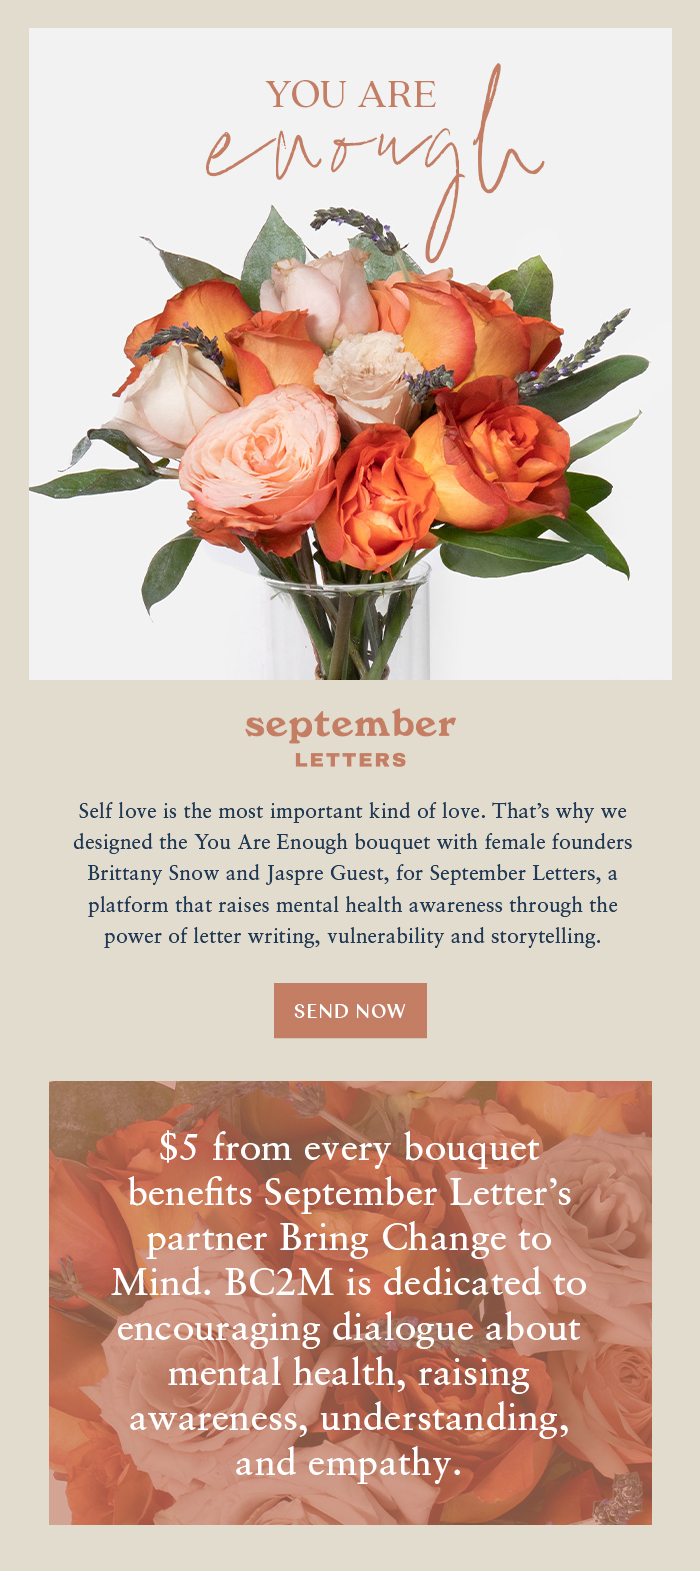 September Letter | Send Now